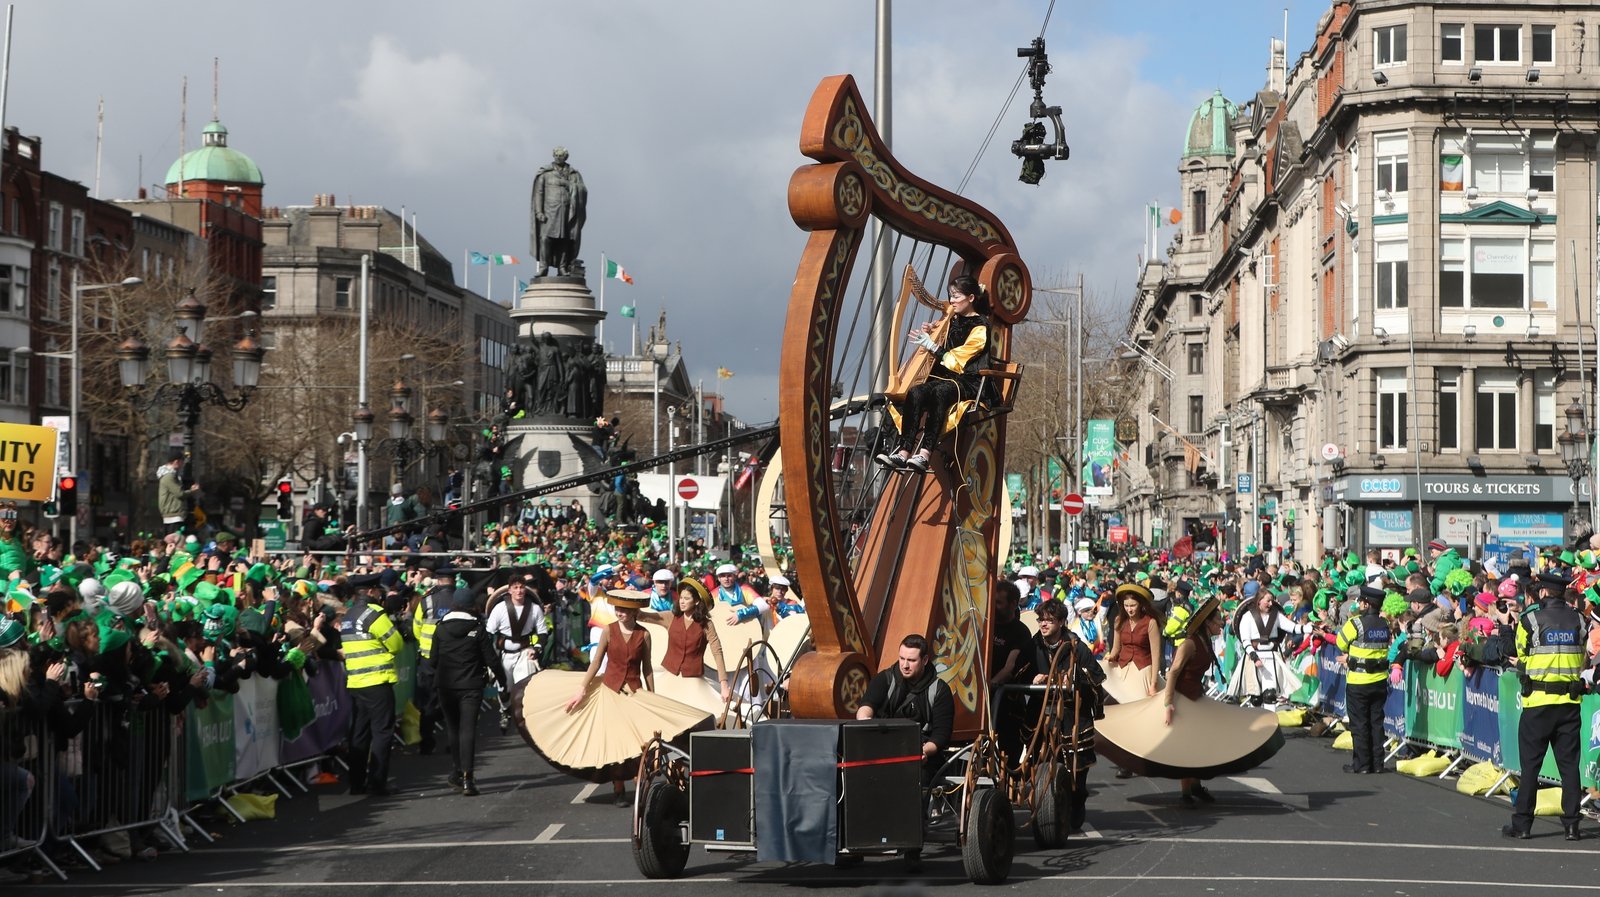 Hundreds of thousands attend St Patrick's Day parades